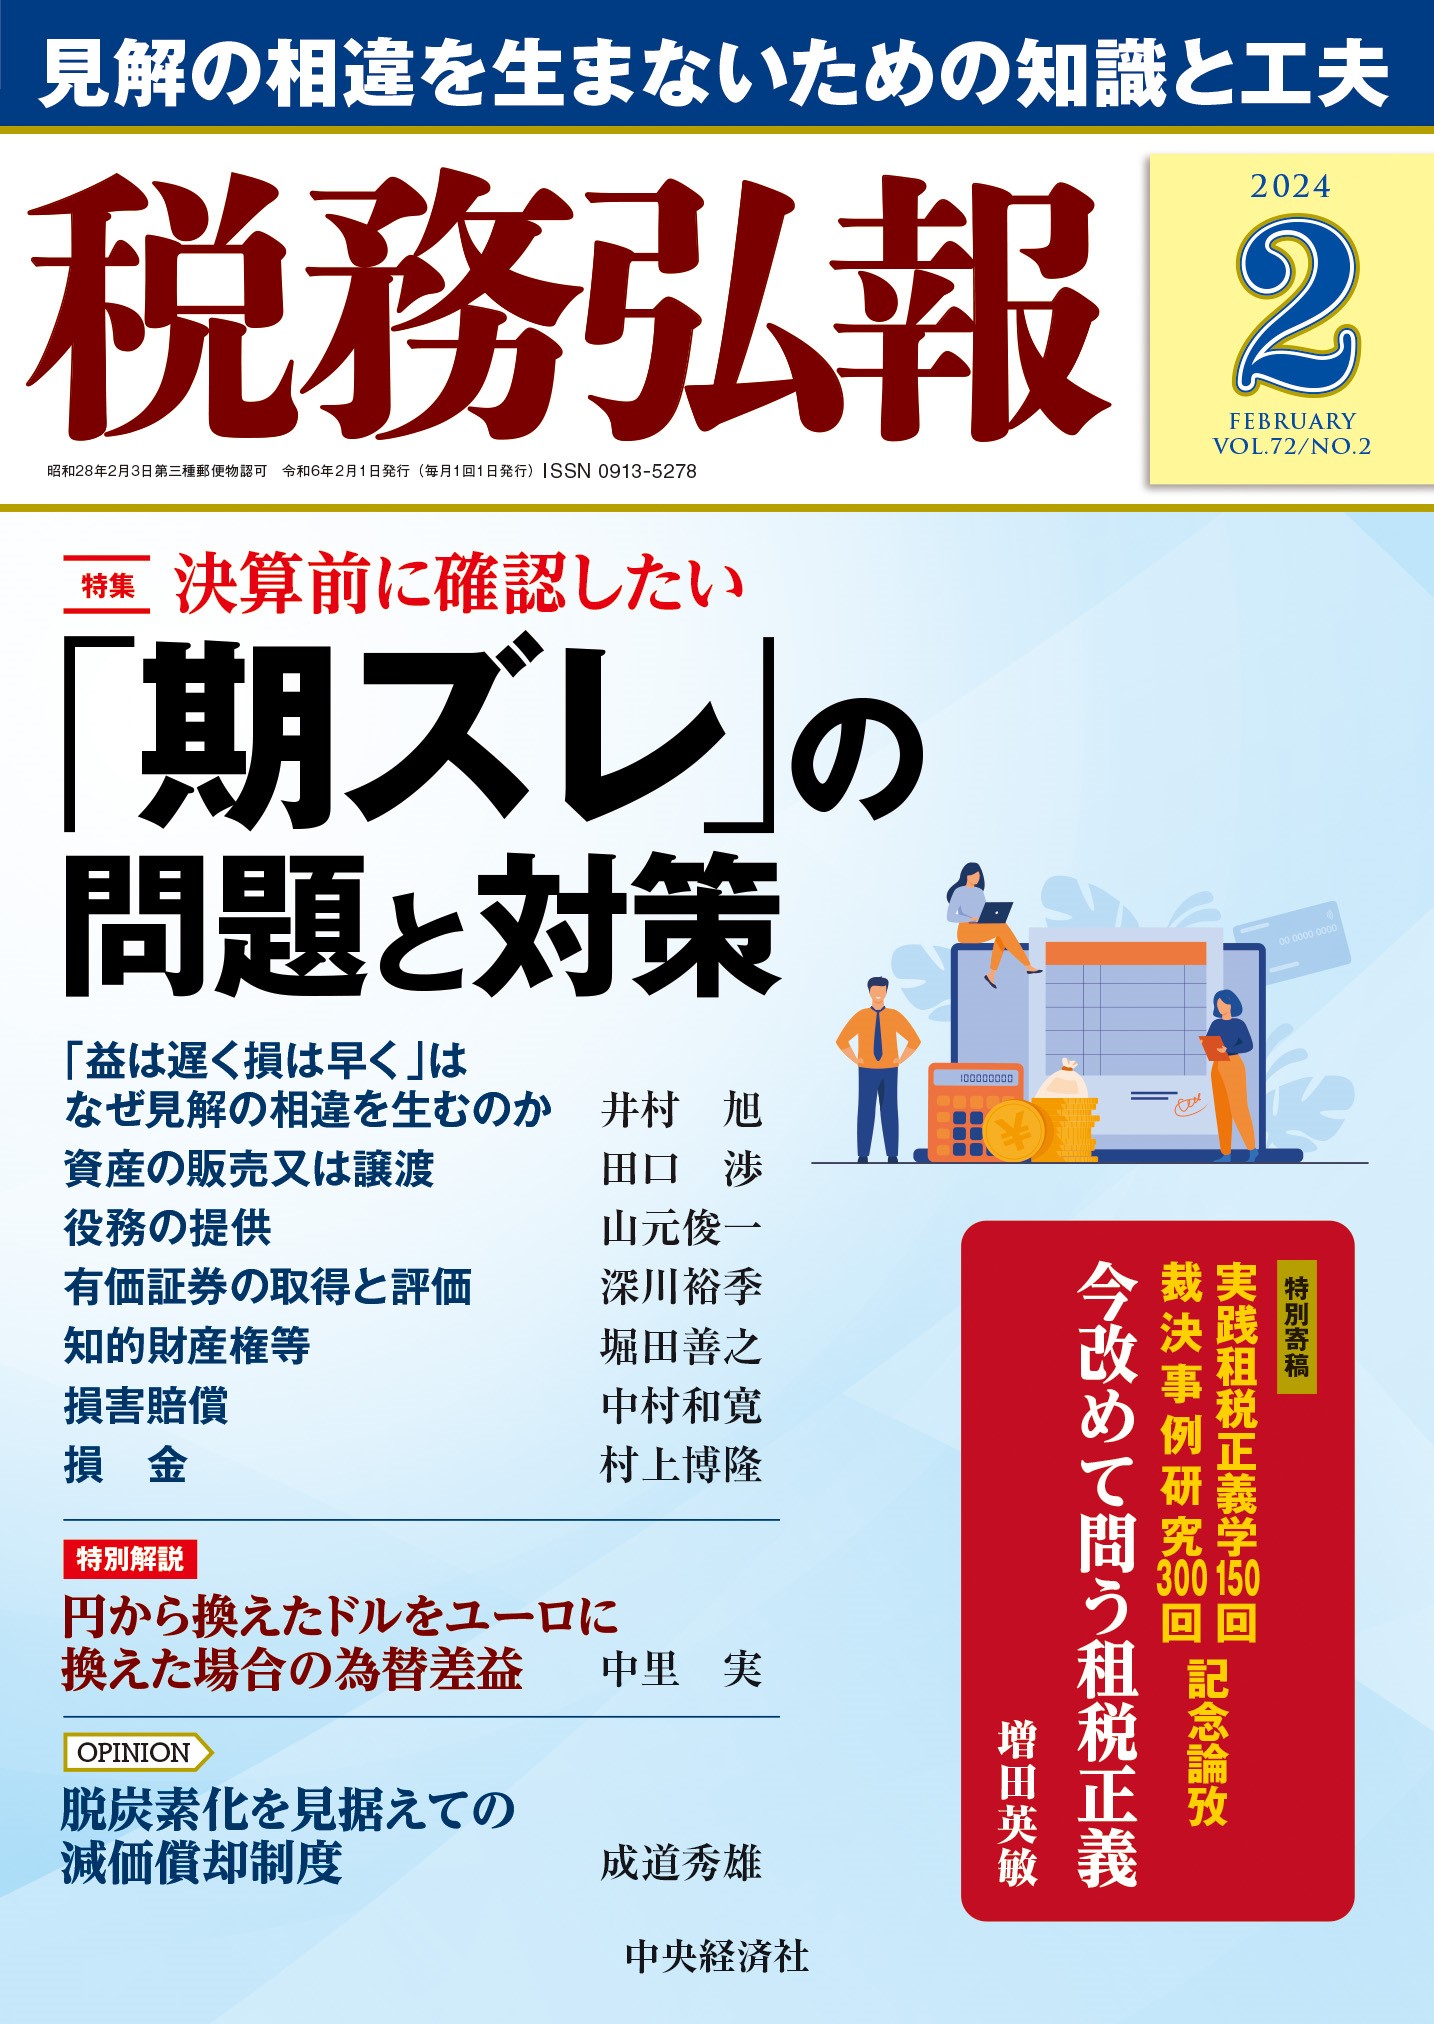 中村和寛弁護士が執筆した税務に関する論考が税務弘報に掲載されました。